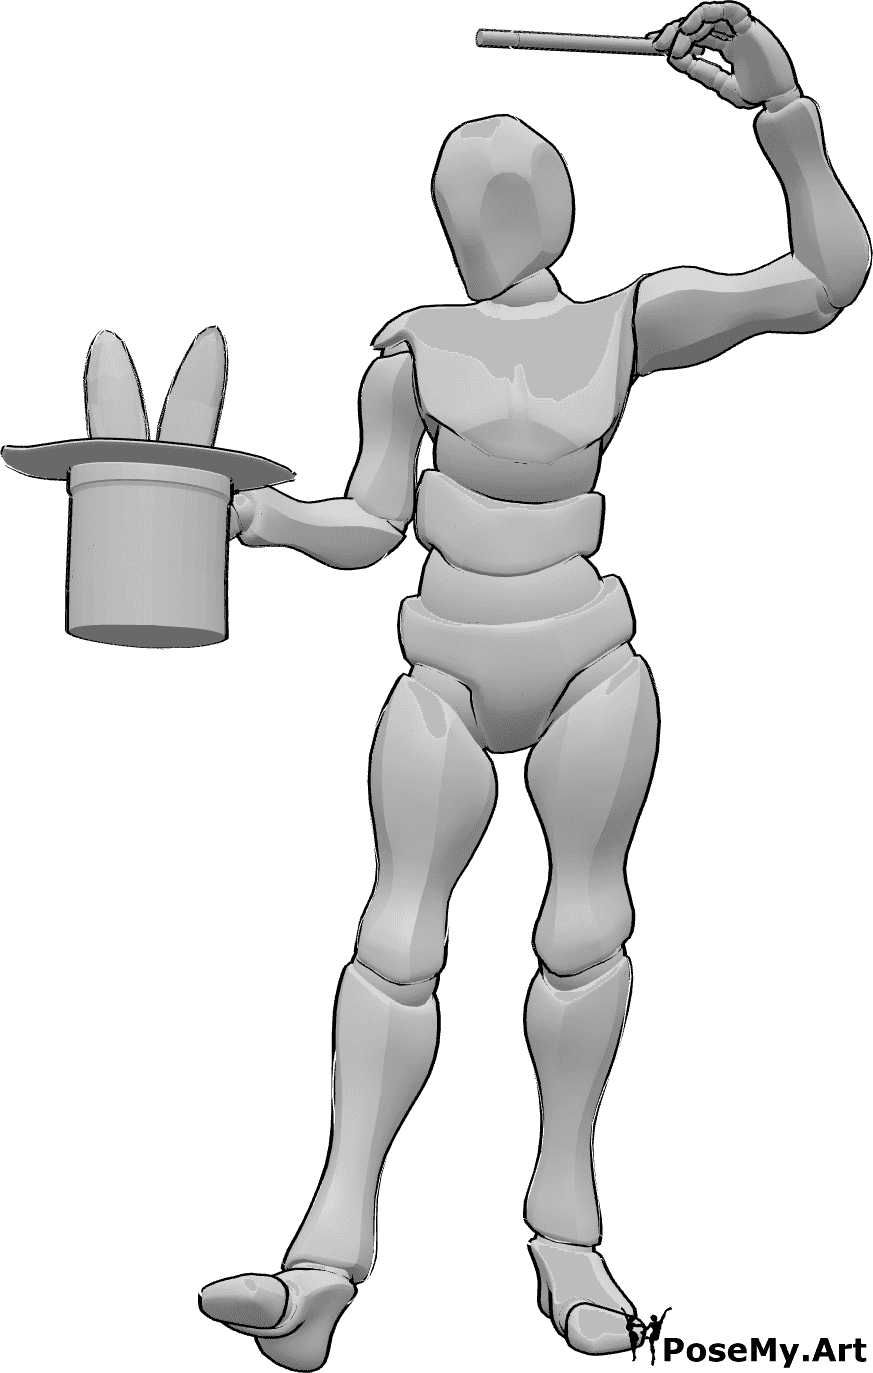 Riferimento alle pose- Posa del coniglio evocativo - Un mago maschio esegue una magia ed evoca un coniglio dal suo cappello da mago con la bacchetta.